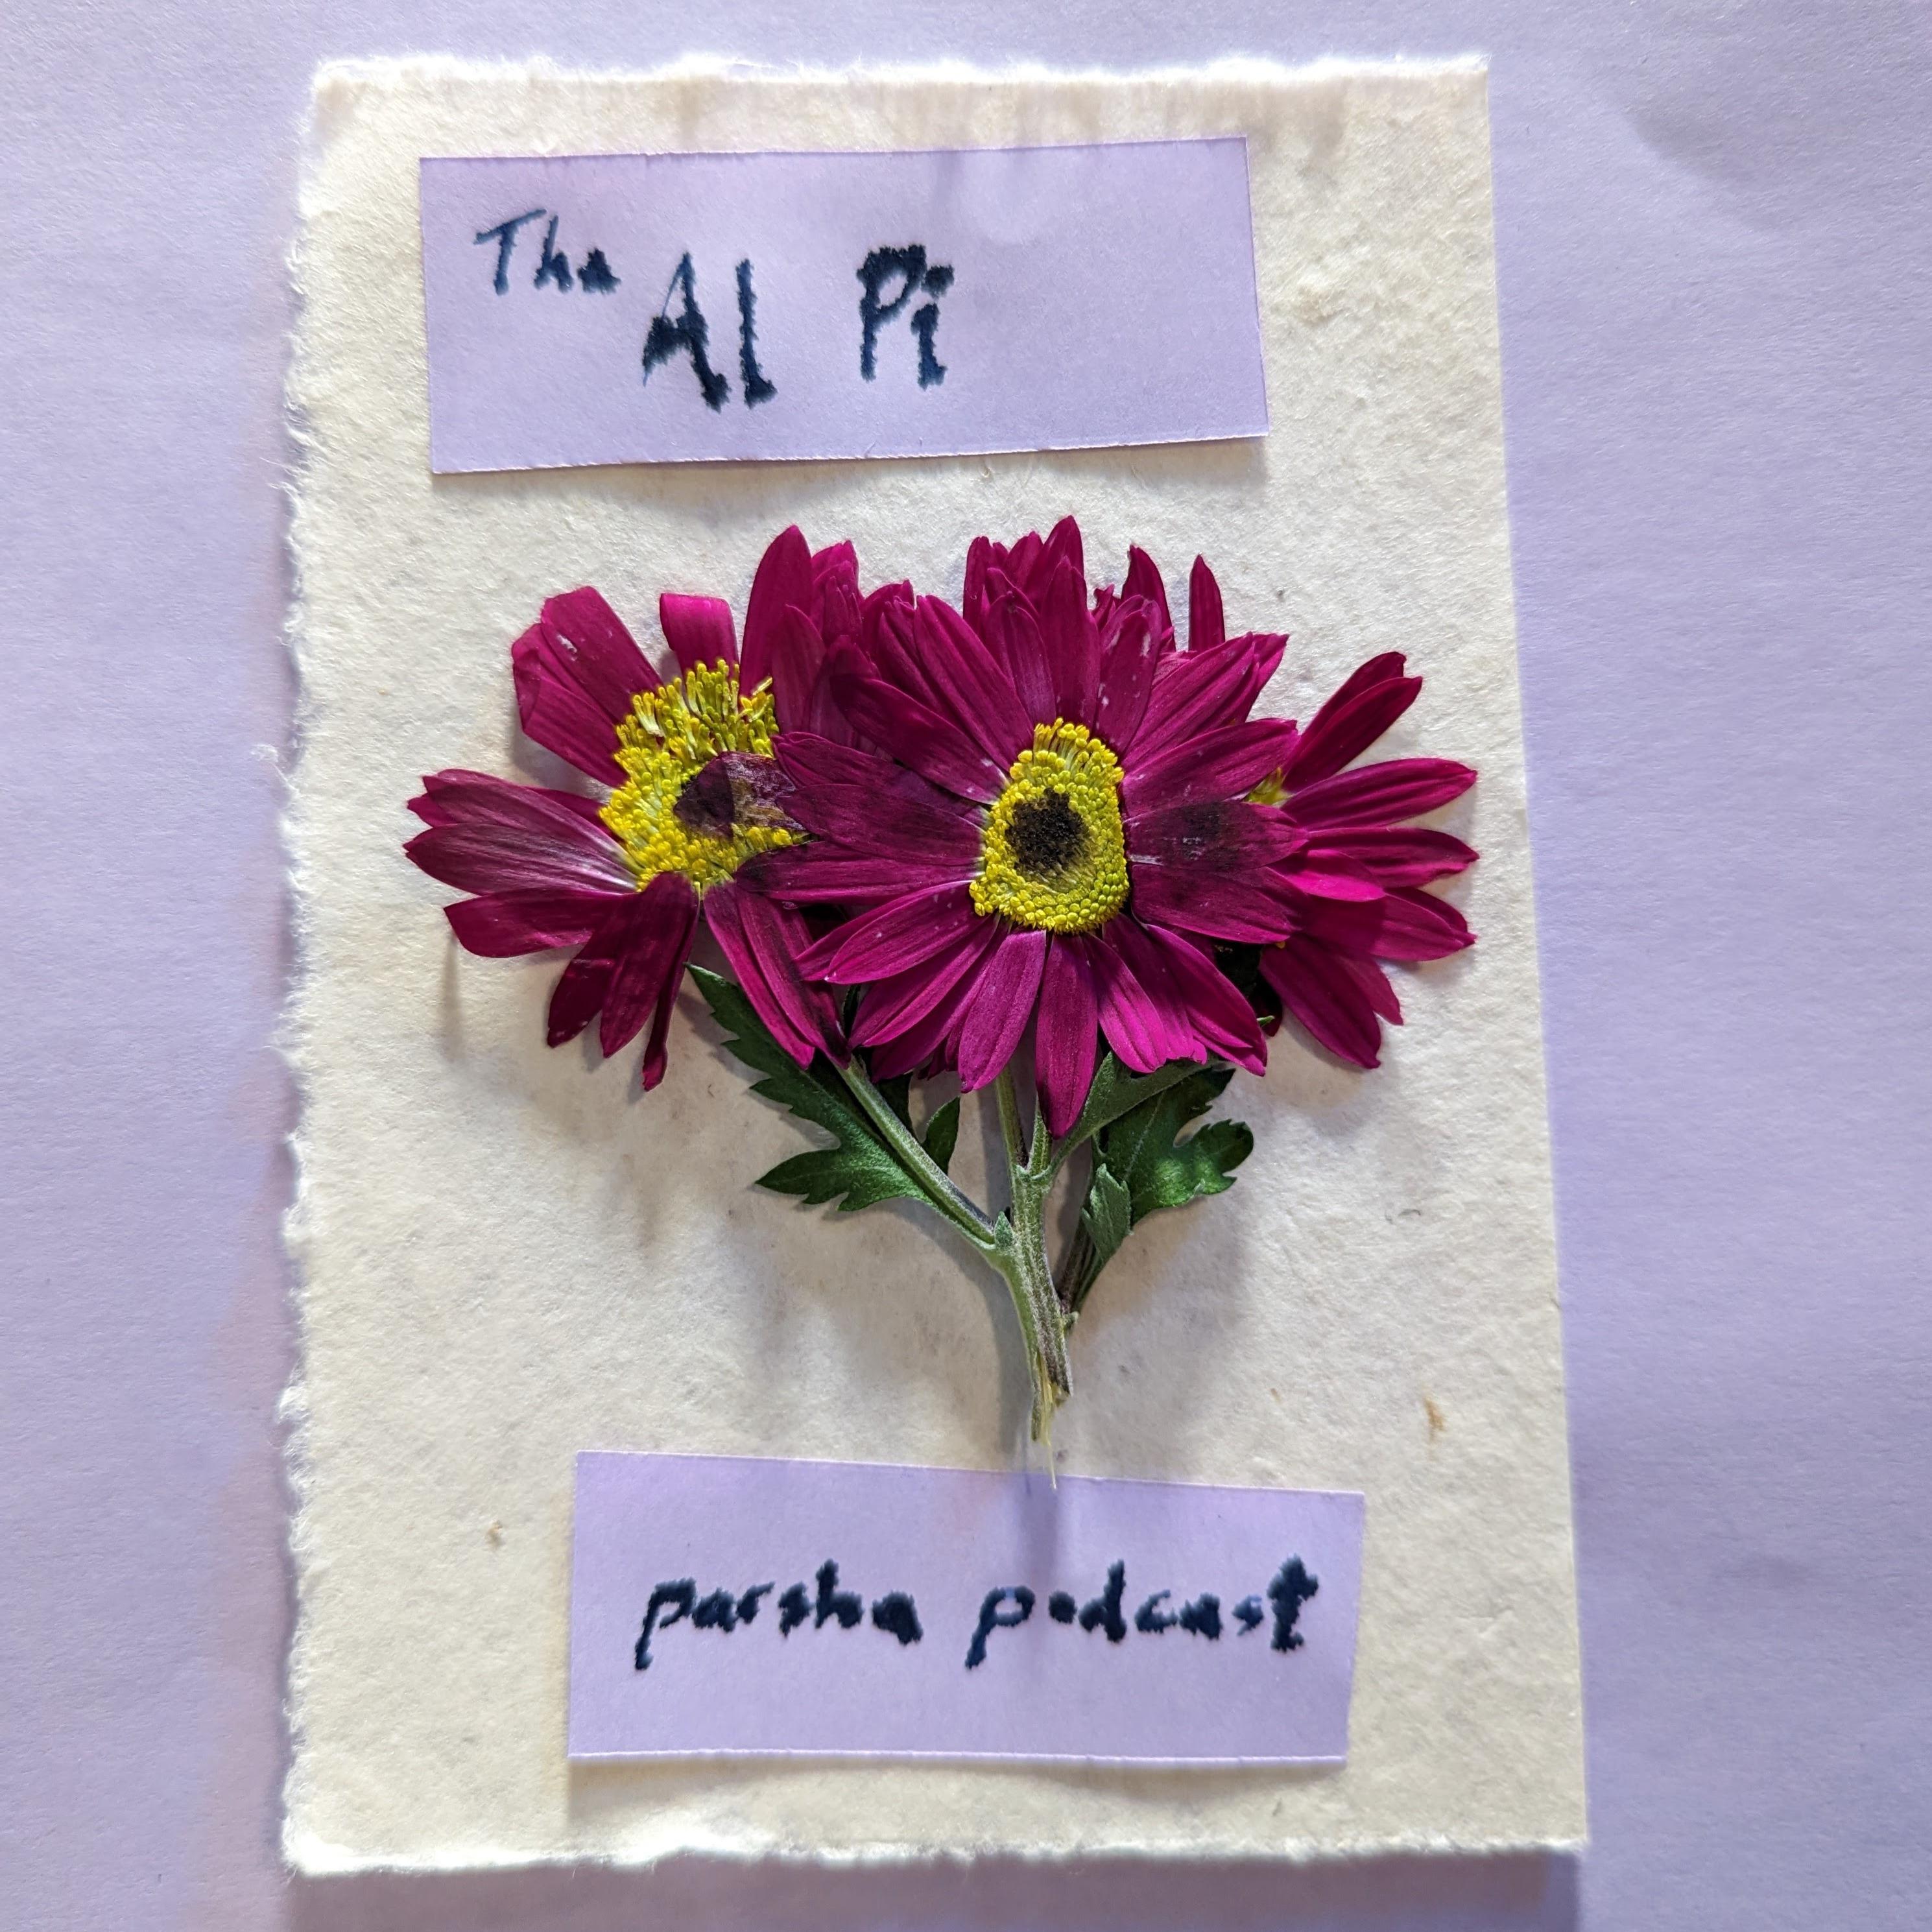 Al Pi Parsha Podcast